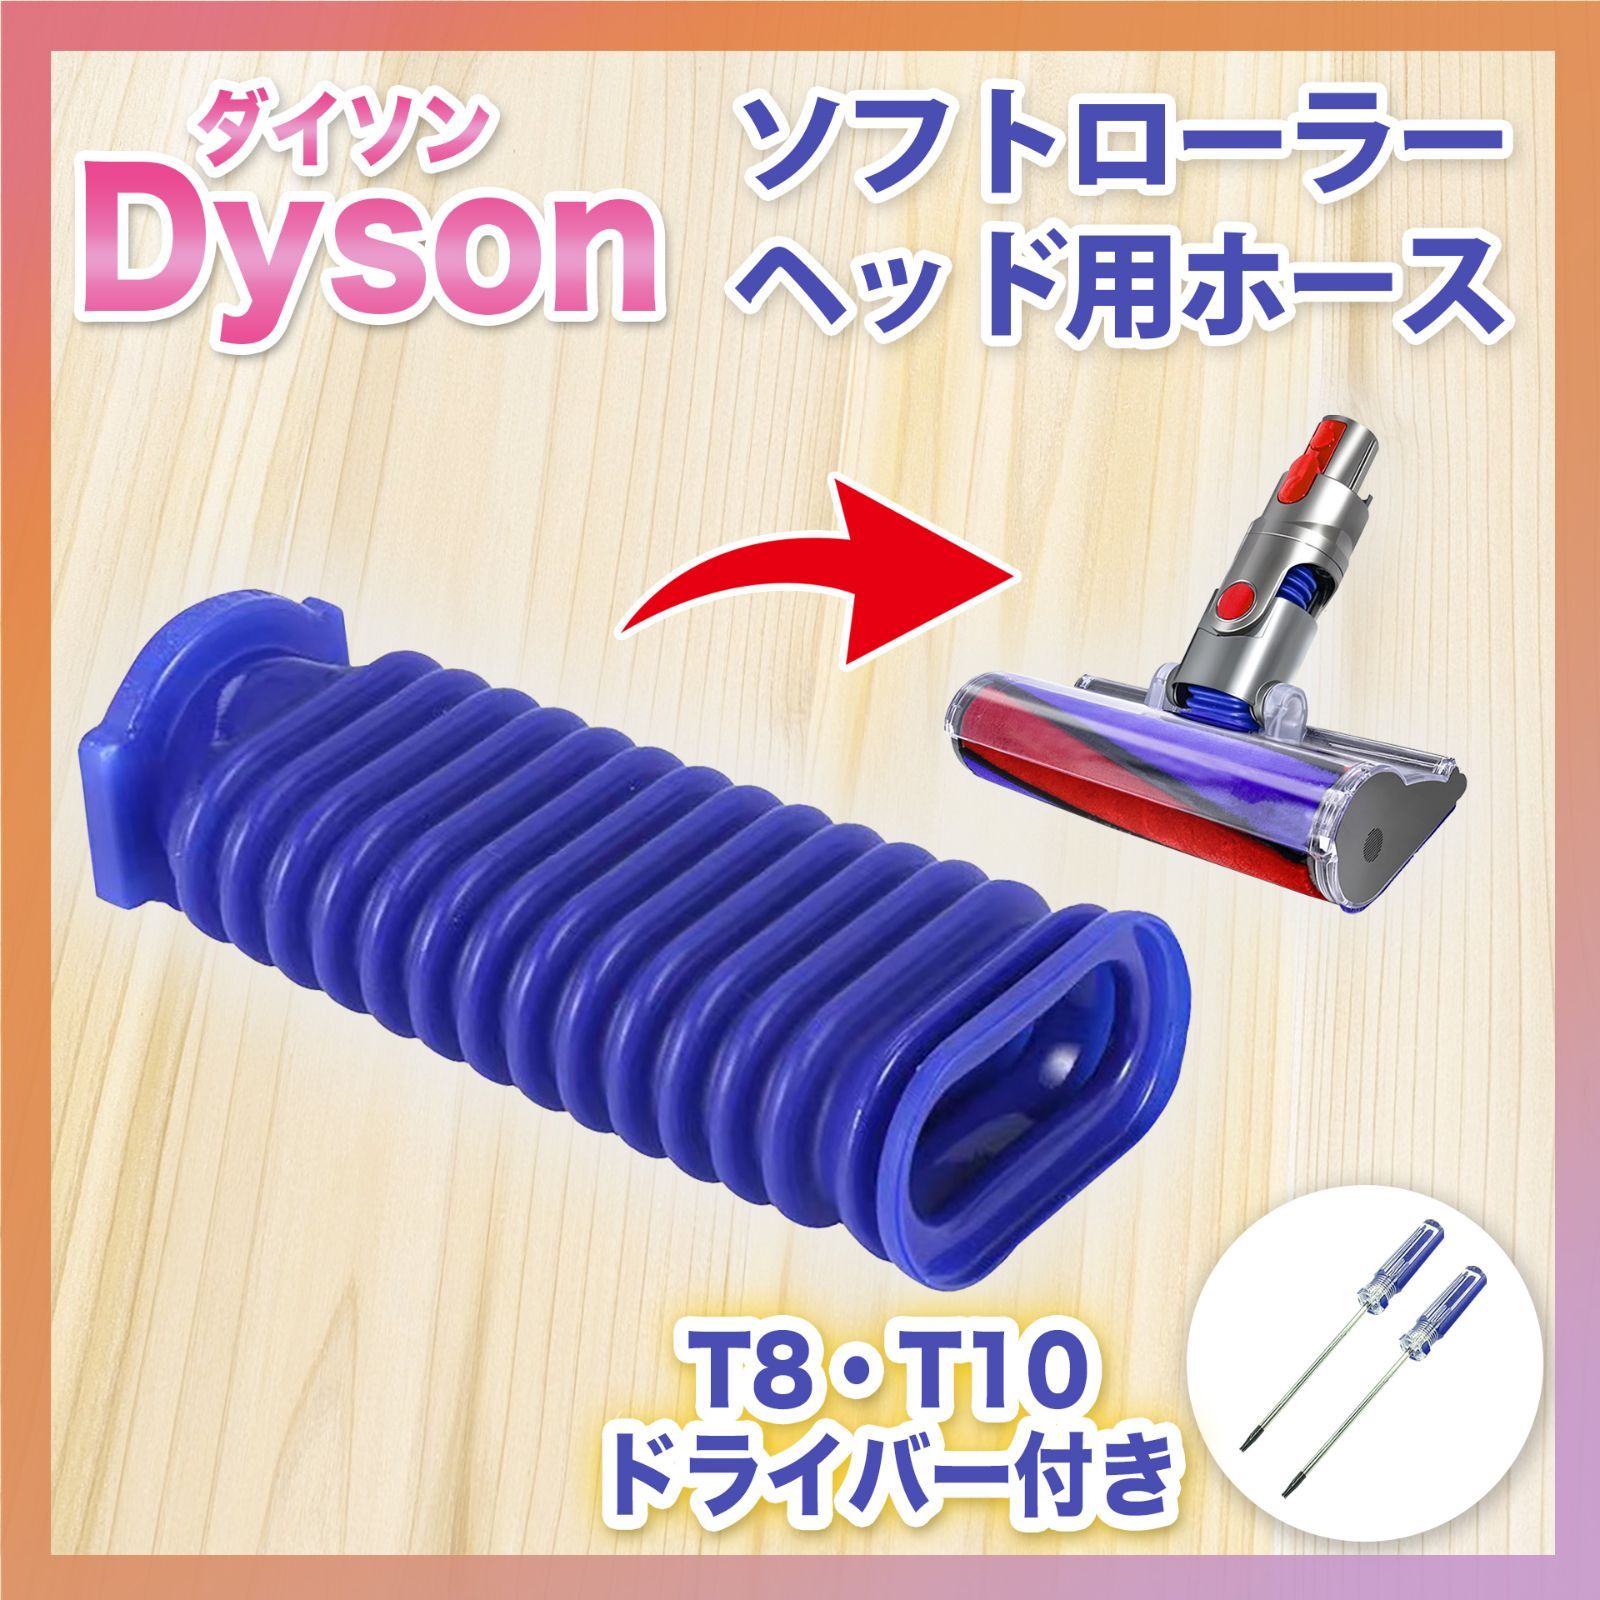 ダイソン Dyson ソフトローラーヘッド用 蛇腹 ホース 互換品 ドライバー付 - メルカリ